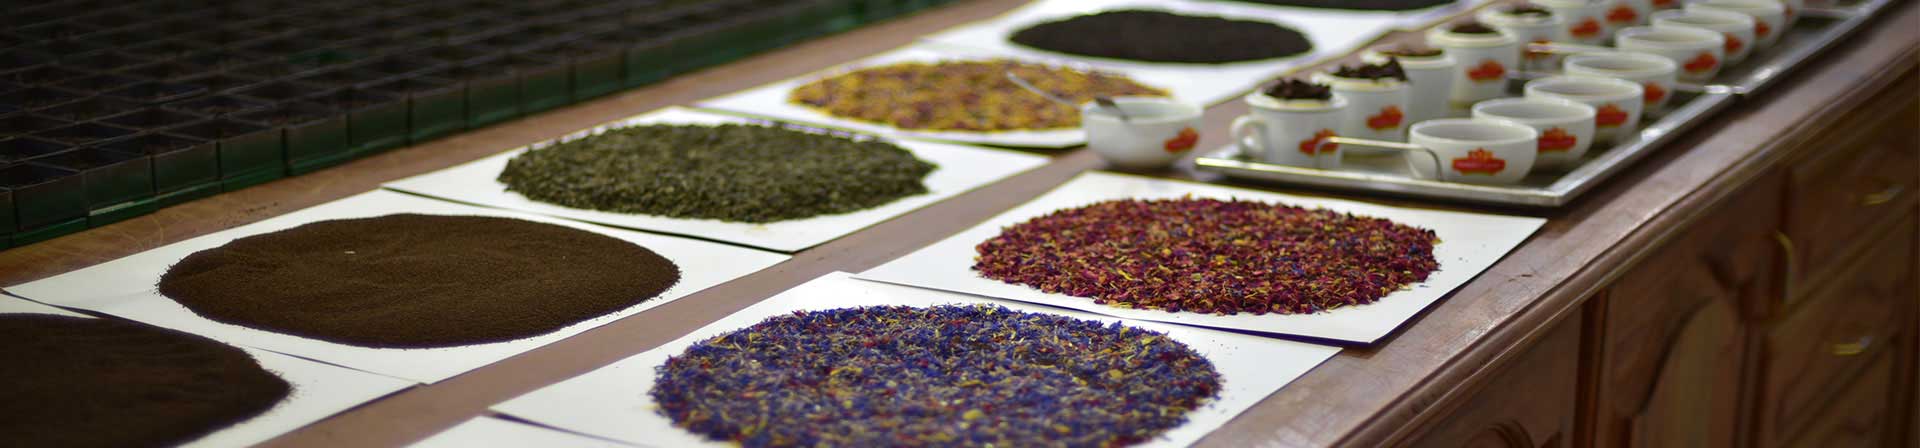 انواع چای ایرانی در بازار